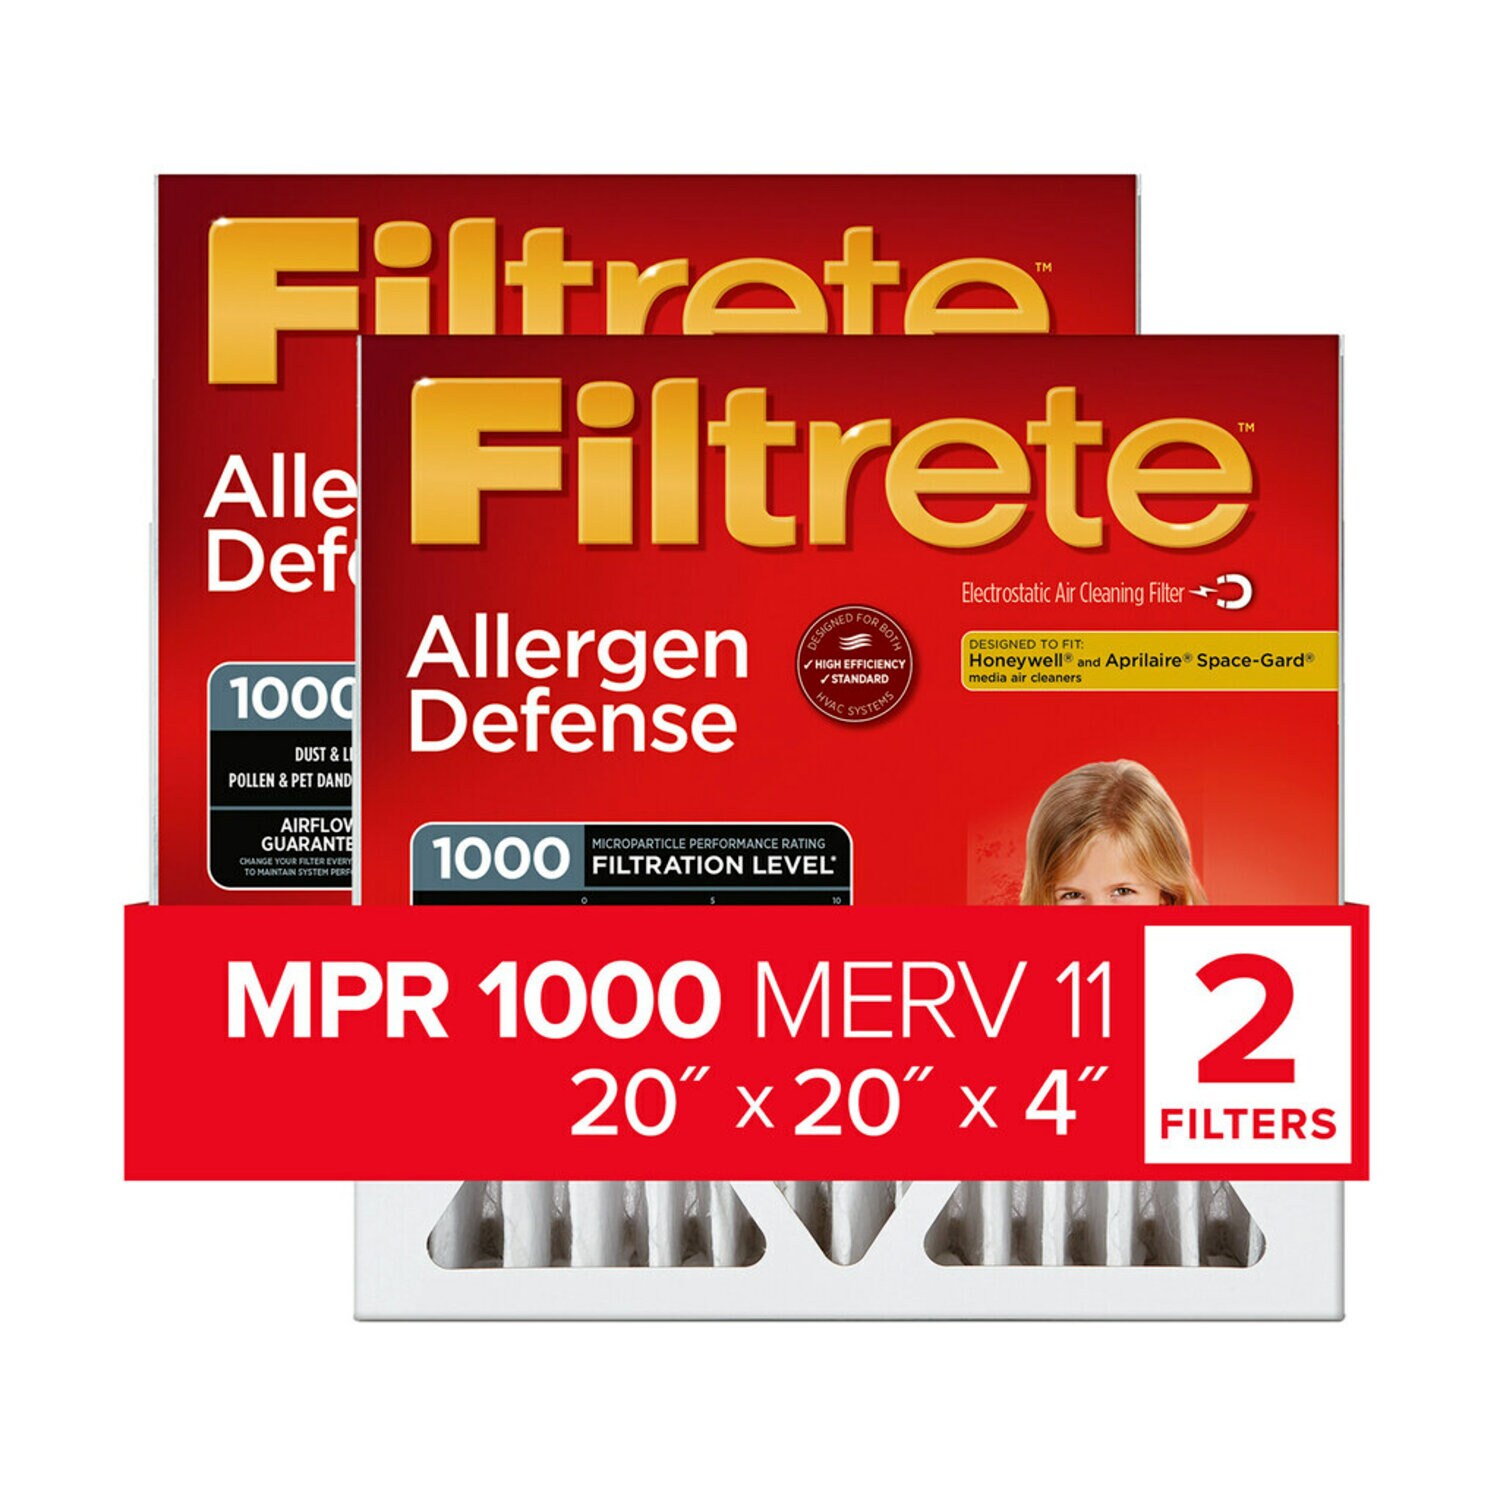 7100268573 - Filtrete High Performance Air Filter 1000 MPR NADP02-2PK-1E, 20 in x 20 in x 4 in (50.8 cm x 50.8 cm x 10.1 cm)